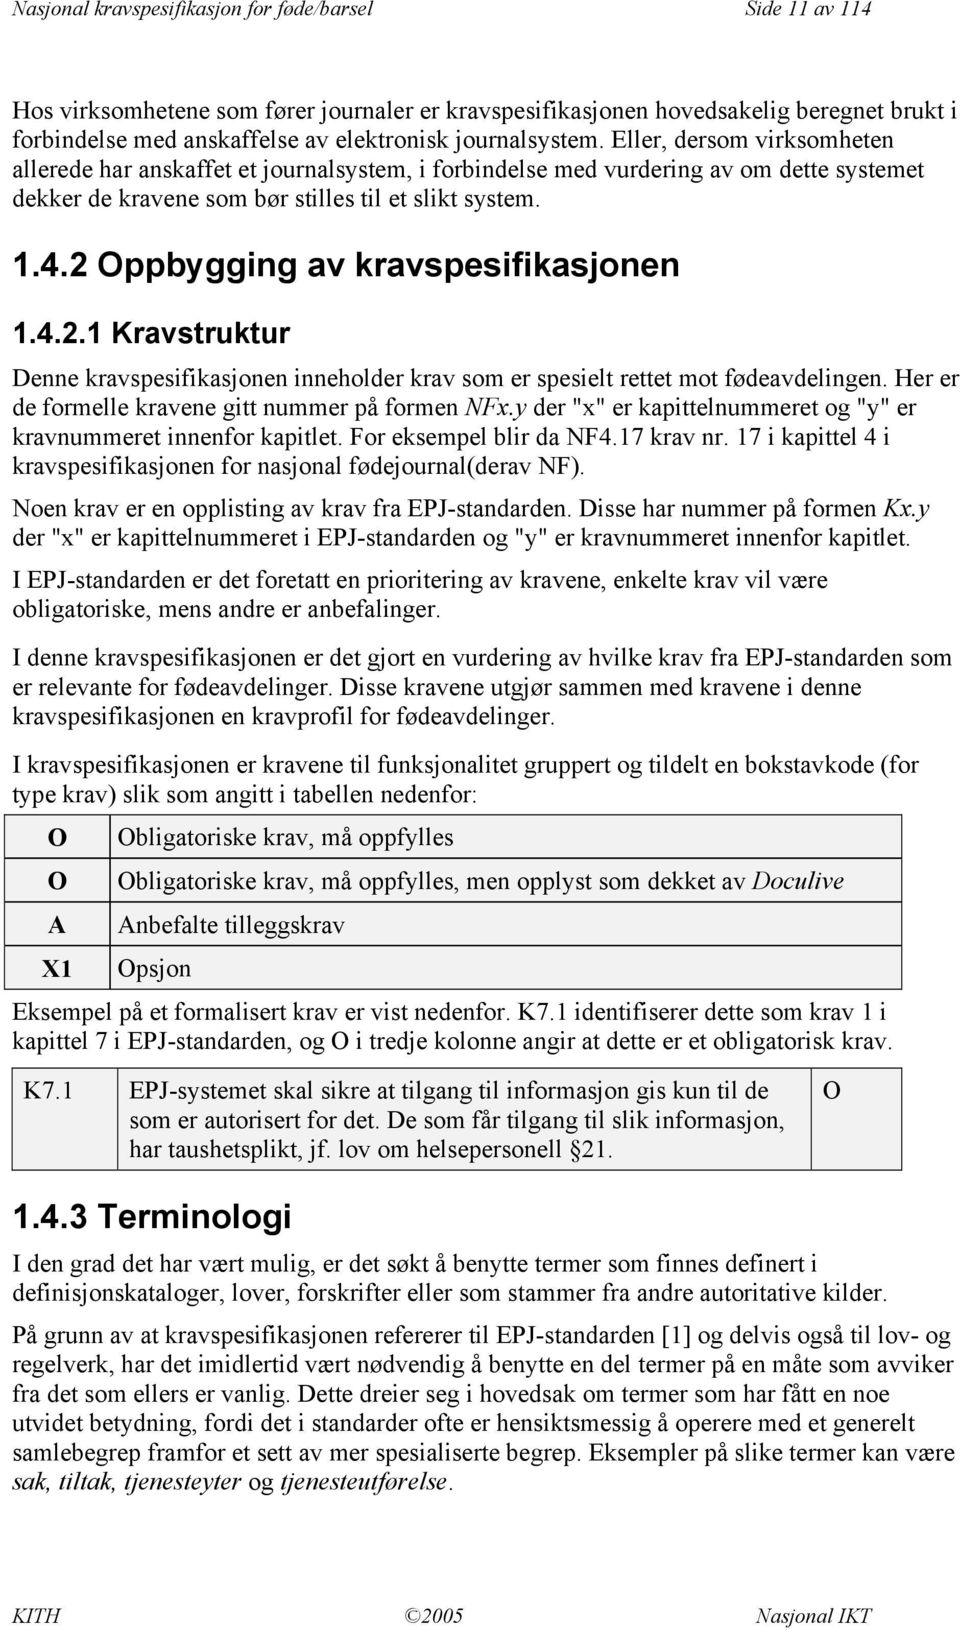 2 ppbygging av kravspesifikasjonen 1.4.2.1 Kravstruktur Denne kravspesifikasjonen inneholder krav som er spesielt rettet mot fødeavdelingen. Her er de formelle kravene gitt nummer på formen NFx.